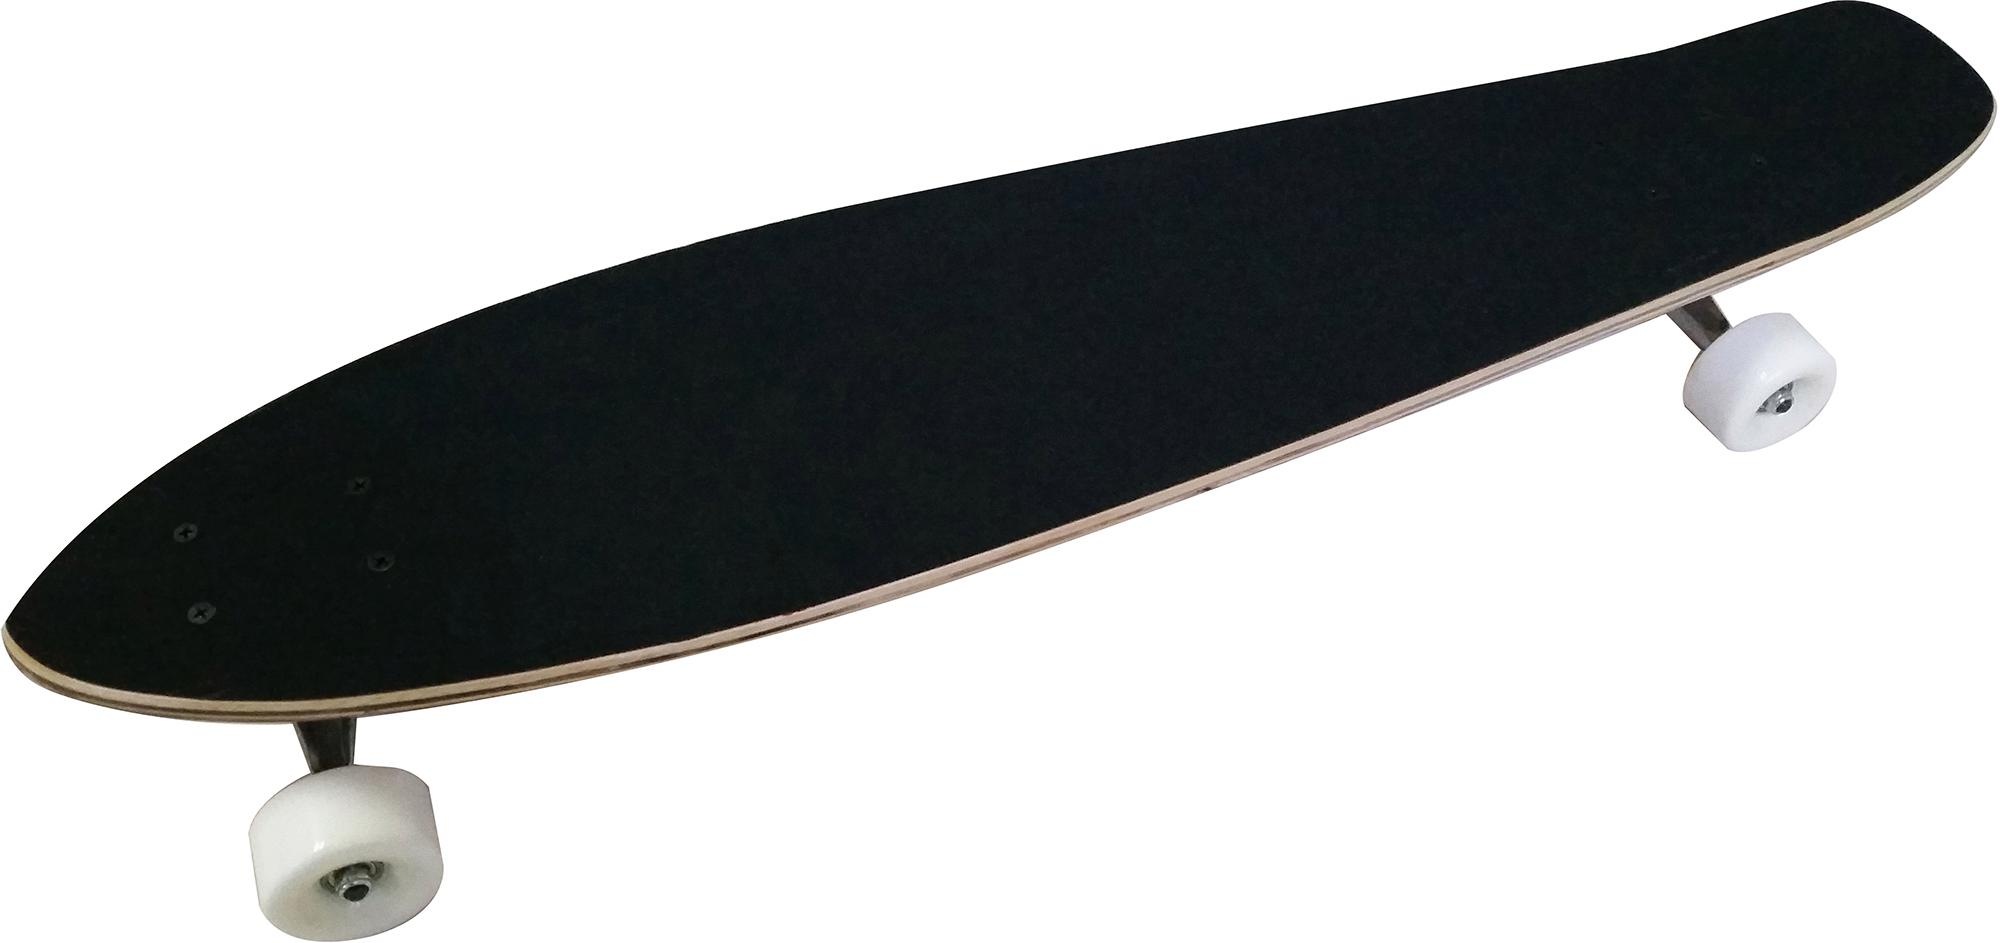 L.A. Sports Longboard »Longboard Concave Cruiser Board« bei | Dreiradscooter